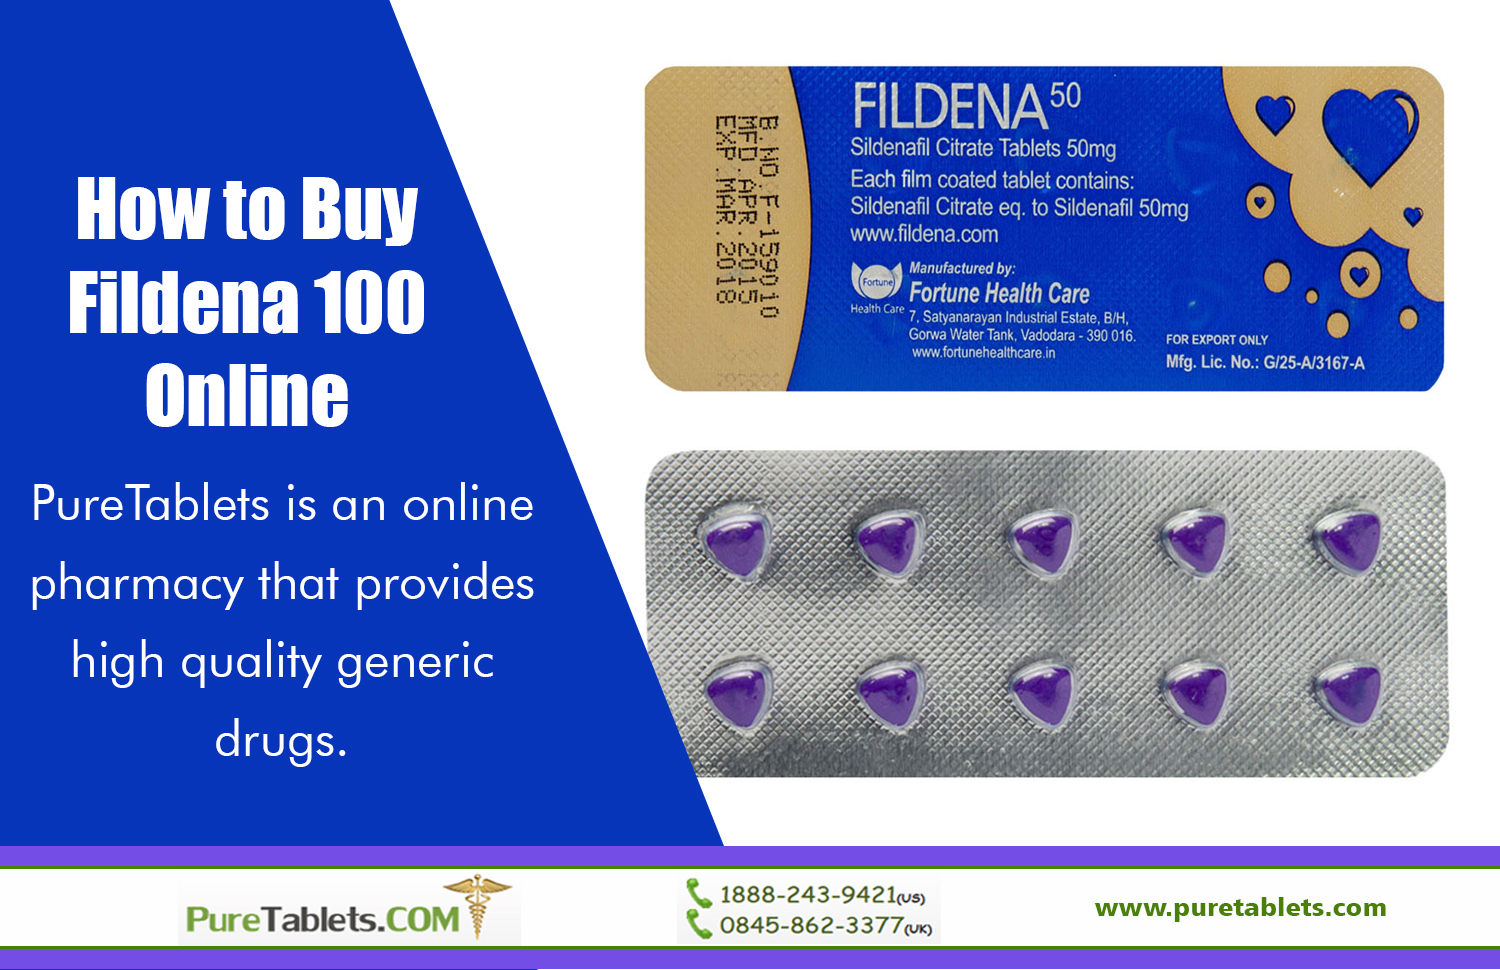 How to Buy Fildena 100 Online